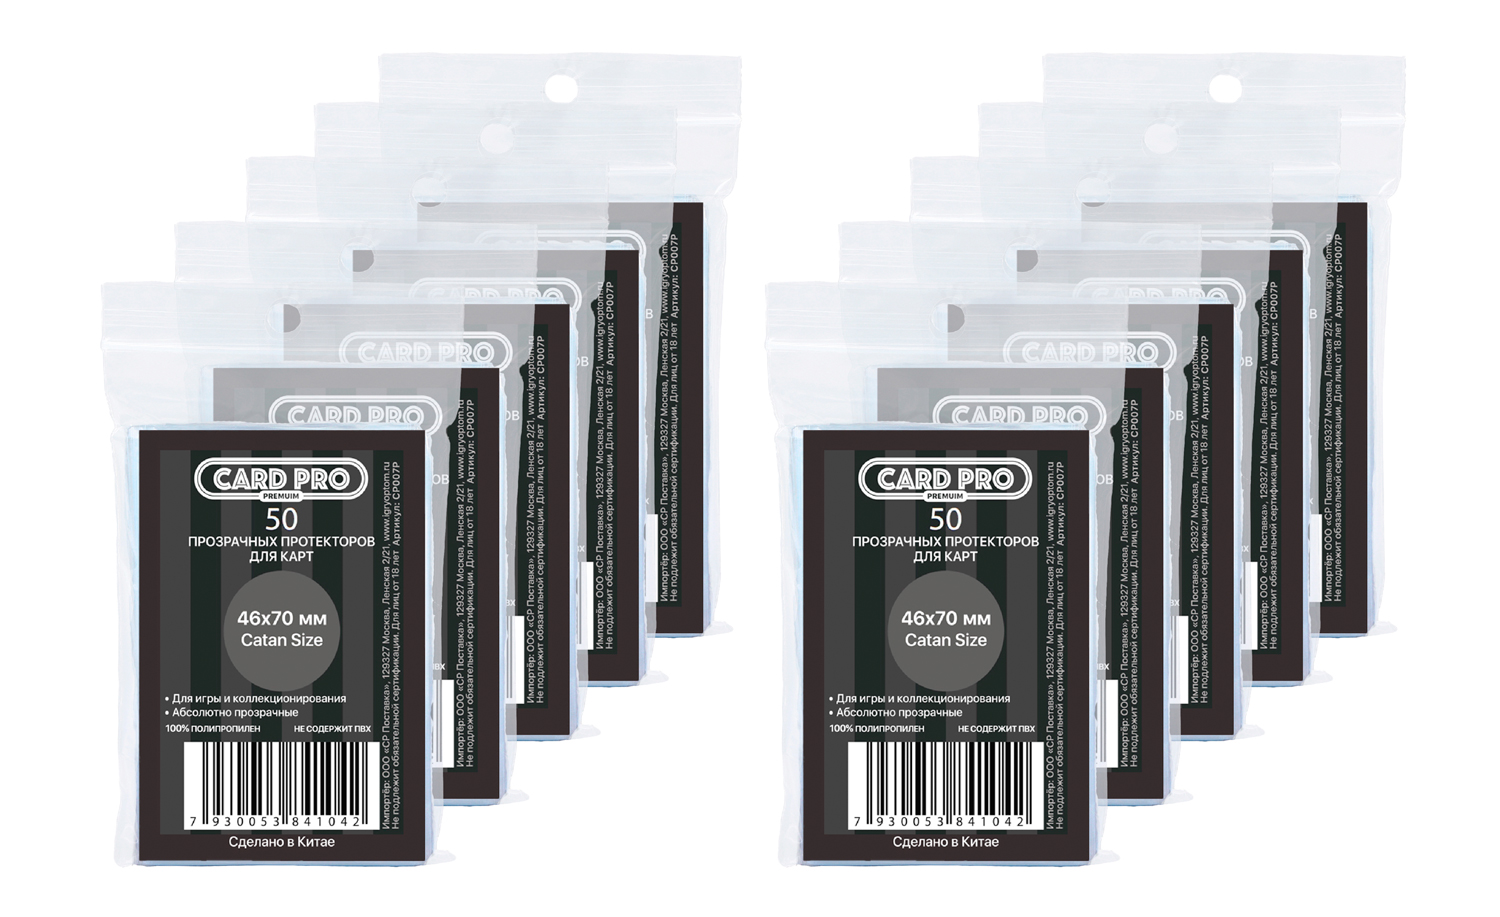 Прозрачные протекторы Card-Pro PREMIUM Catan Size 46x70 мм, 10 пачек по 50 шт прозрачные протекторы card pro premium для ccg 66x92 мм 2 пачки